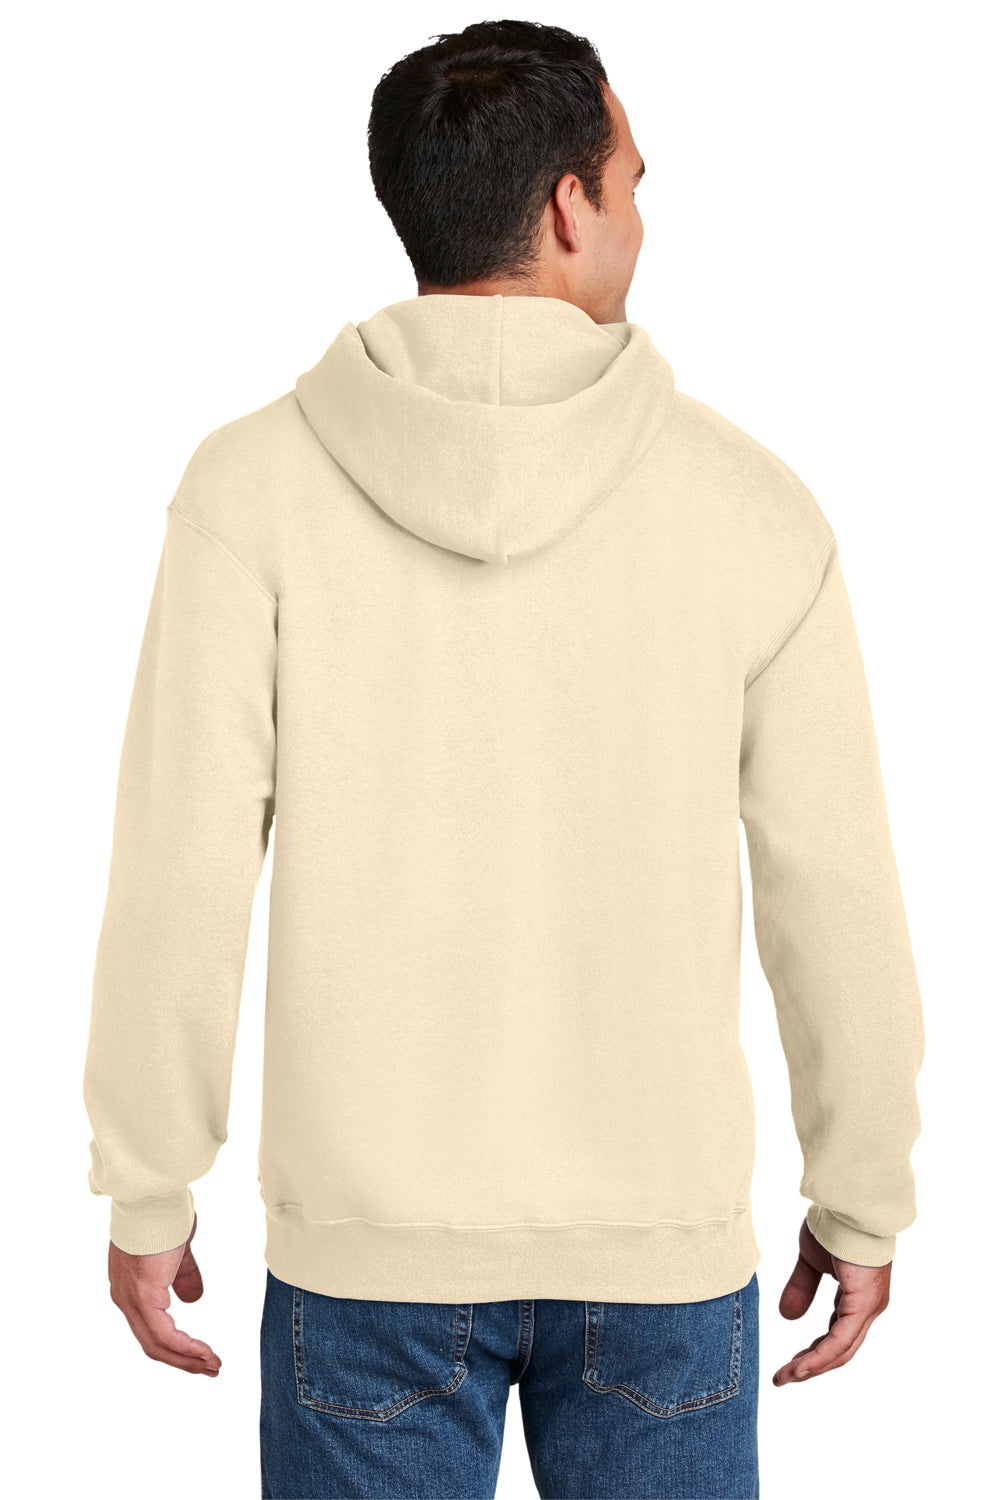 Hanes Mens Ultimate Cotton PrintPro XP Hooded Sweatshirt Hoodie Natural Back